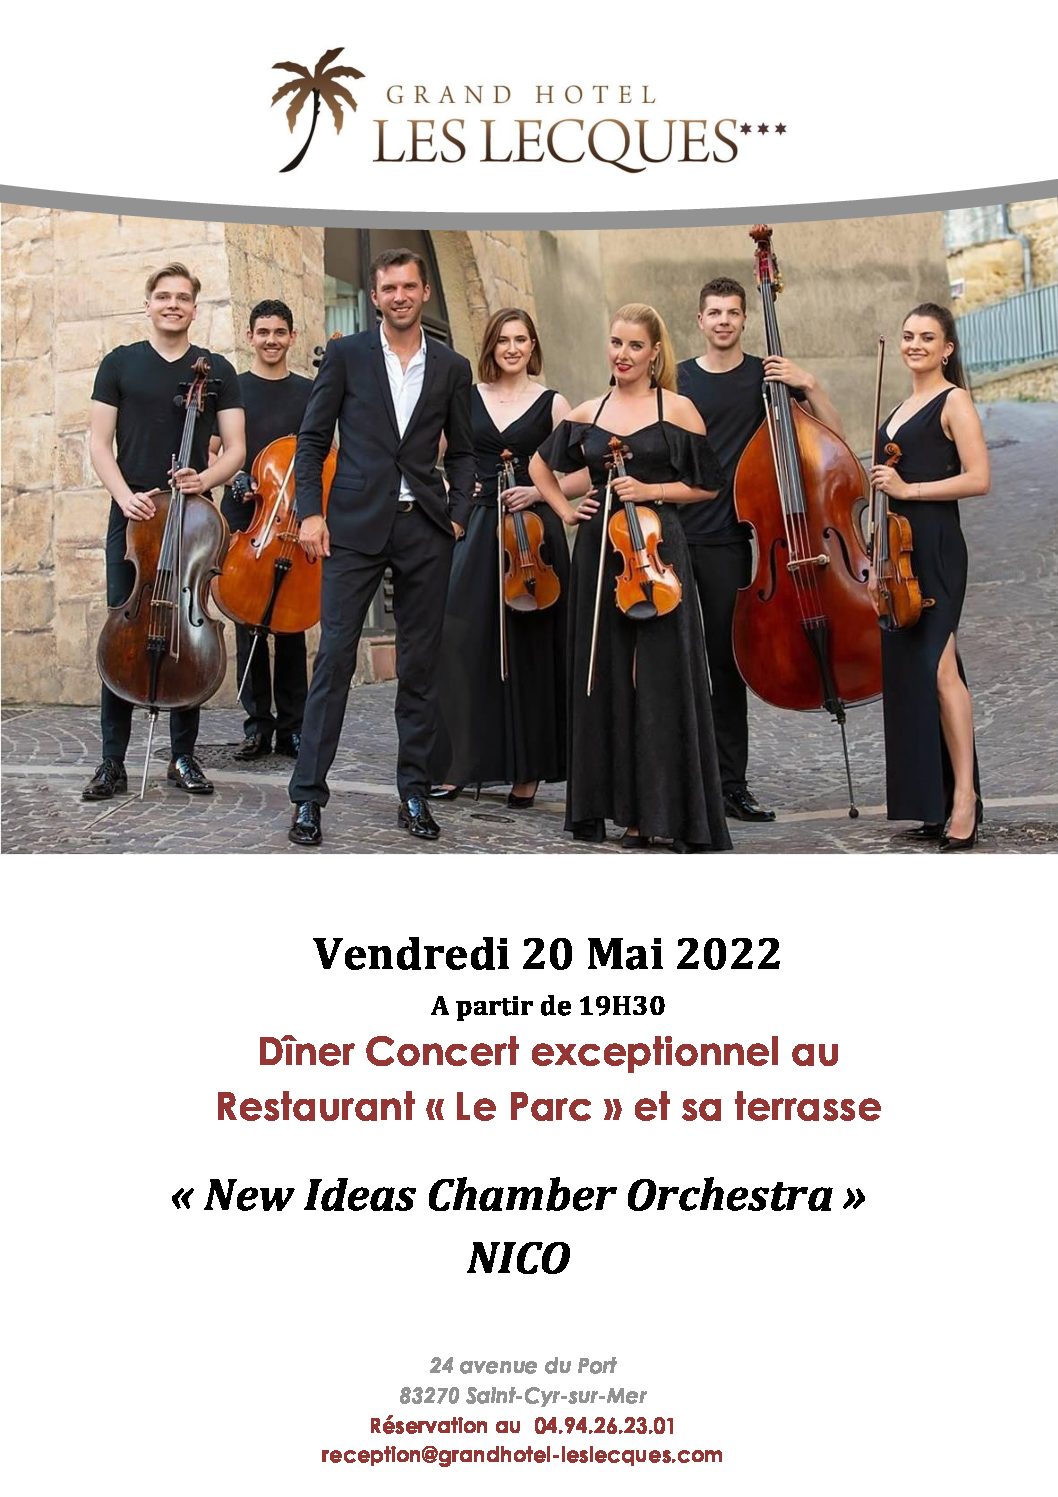 Dîner Concert exceptionnel le Vendredi 20 Mai 2022